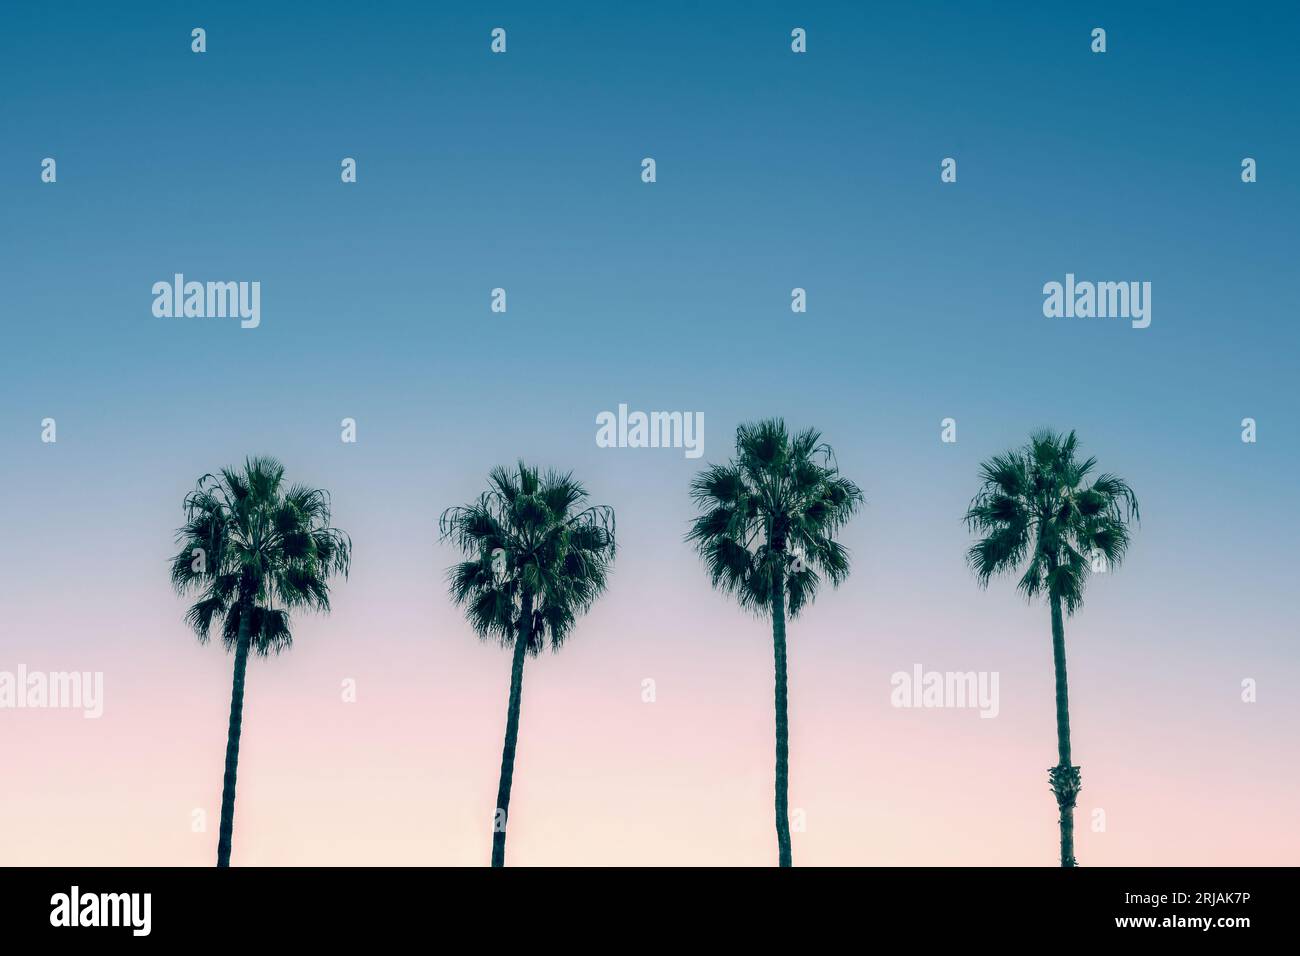 Palmiers et ciel bleu, vibes d'été californiennes vintage Banque D'Images